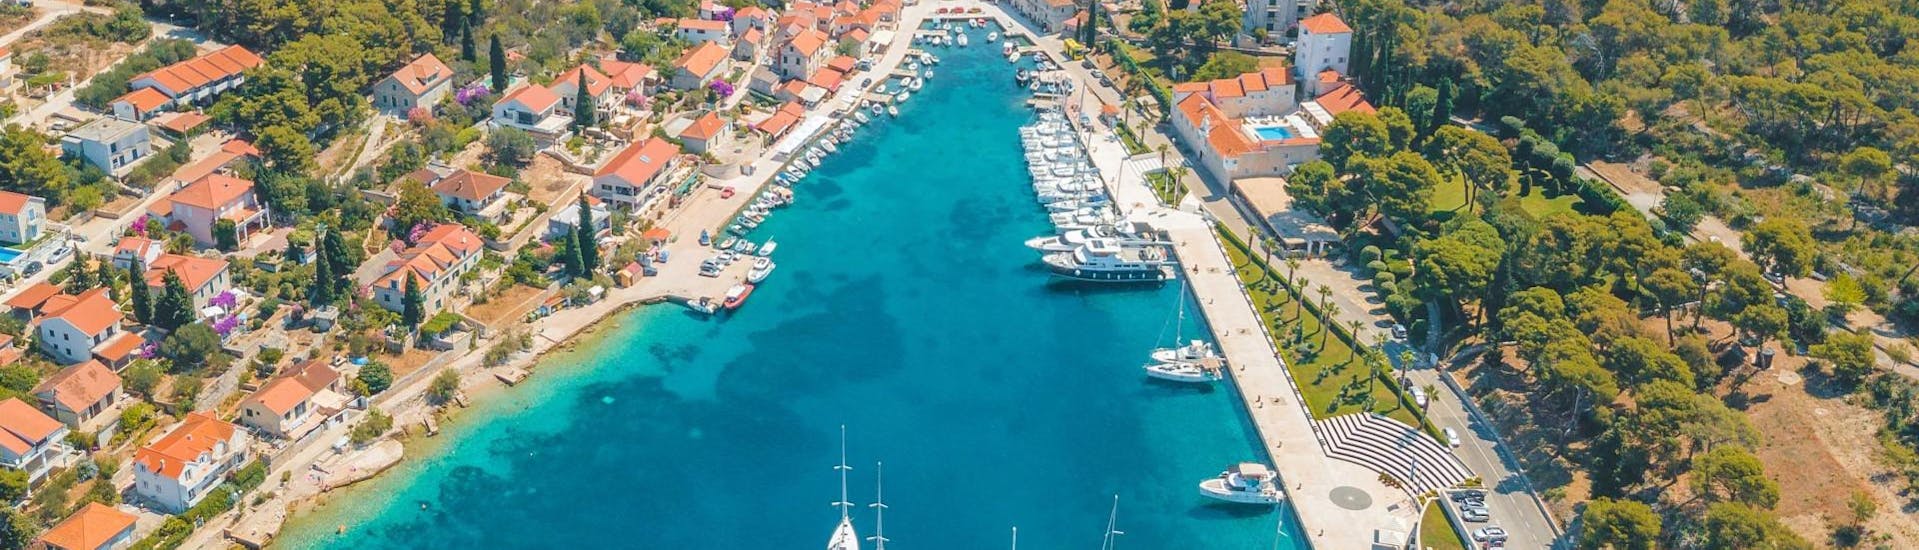 I panorami mozzafiato durante la gita in barca alla laguna blu e all'isola di Solta con Mayer Charter Trogir.